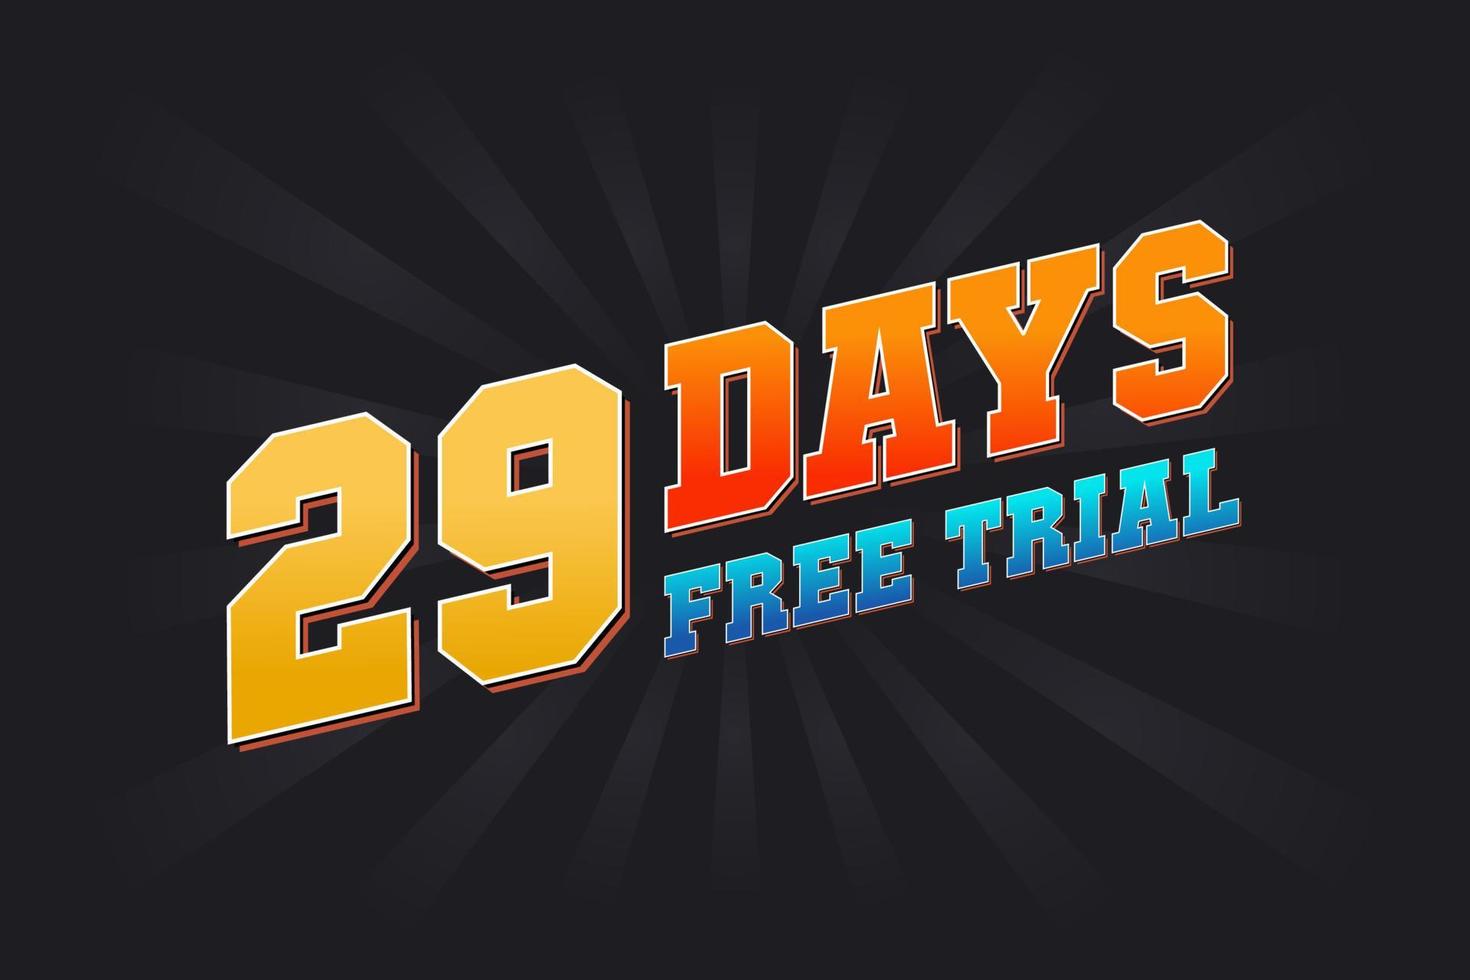 29 jours d'essai gratuit vecteur de stock de texte promotionnel en gras